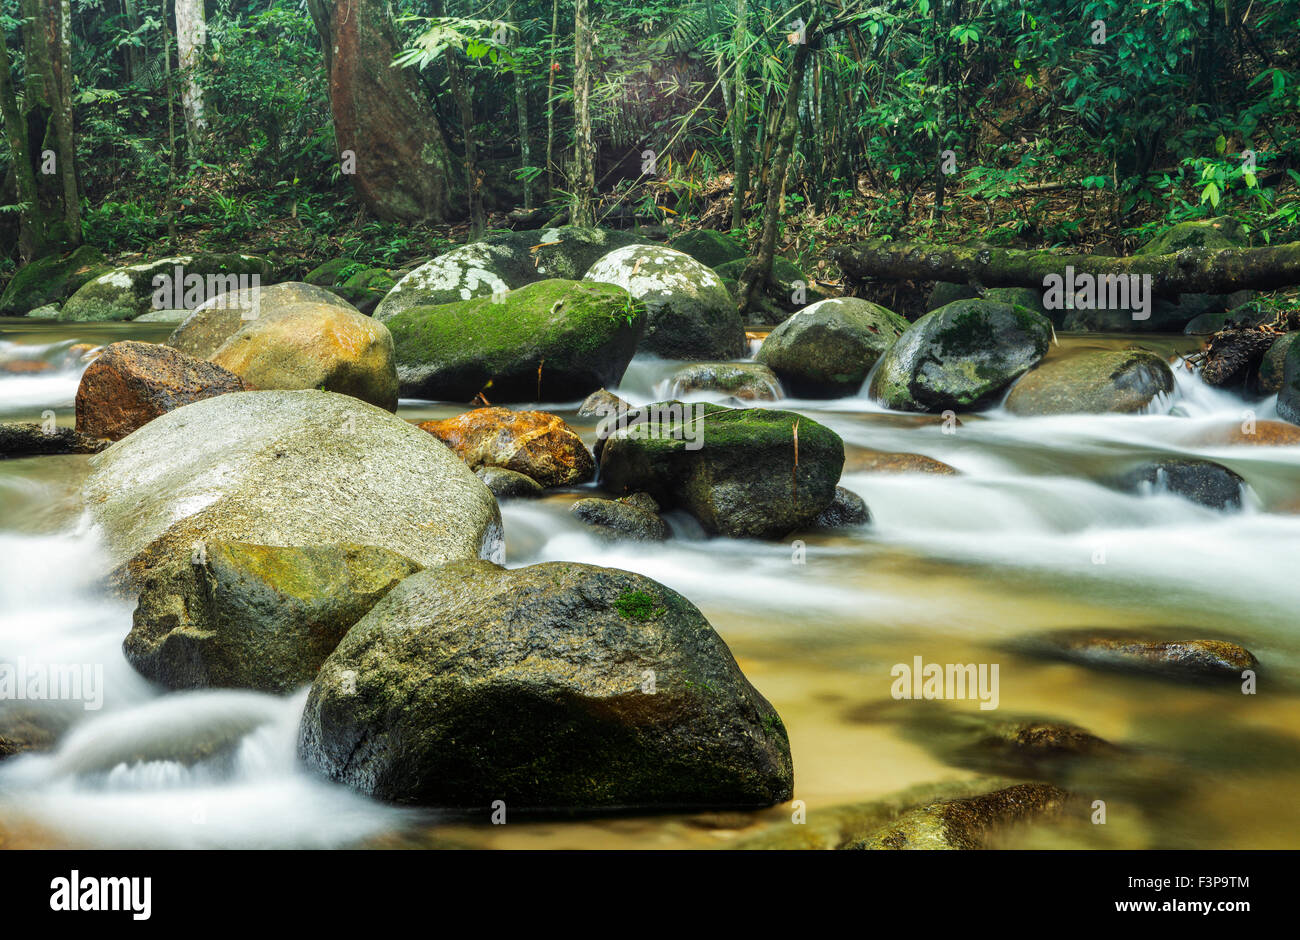 The Streams of Sungai Tua, Selayang, Malaysia. Stock Photo